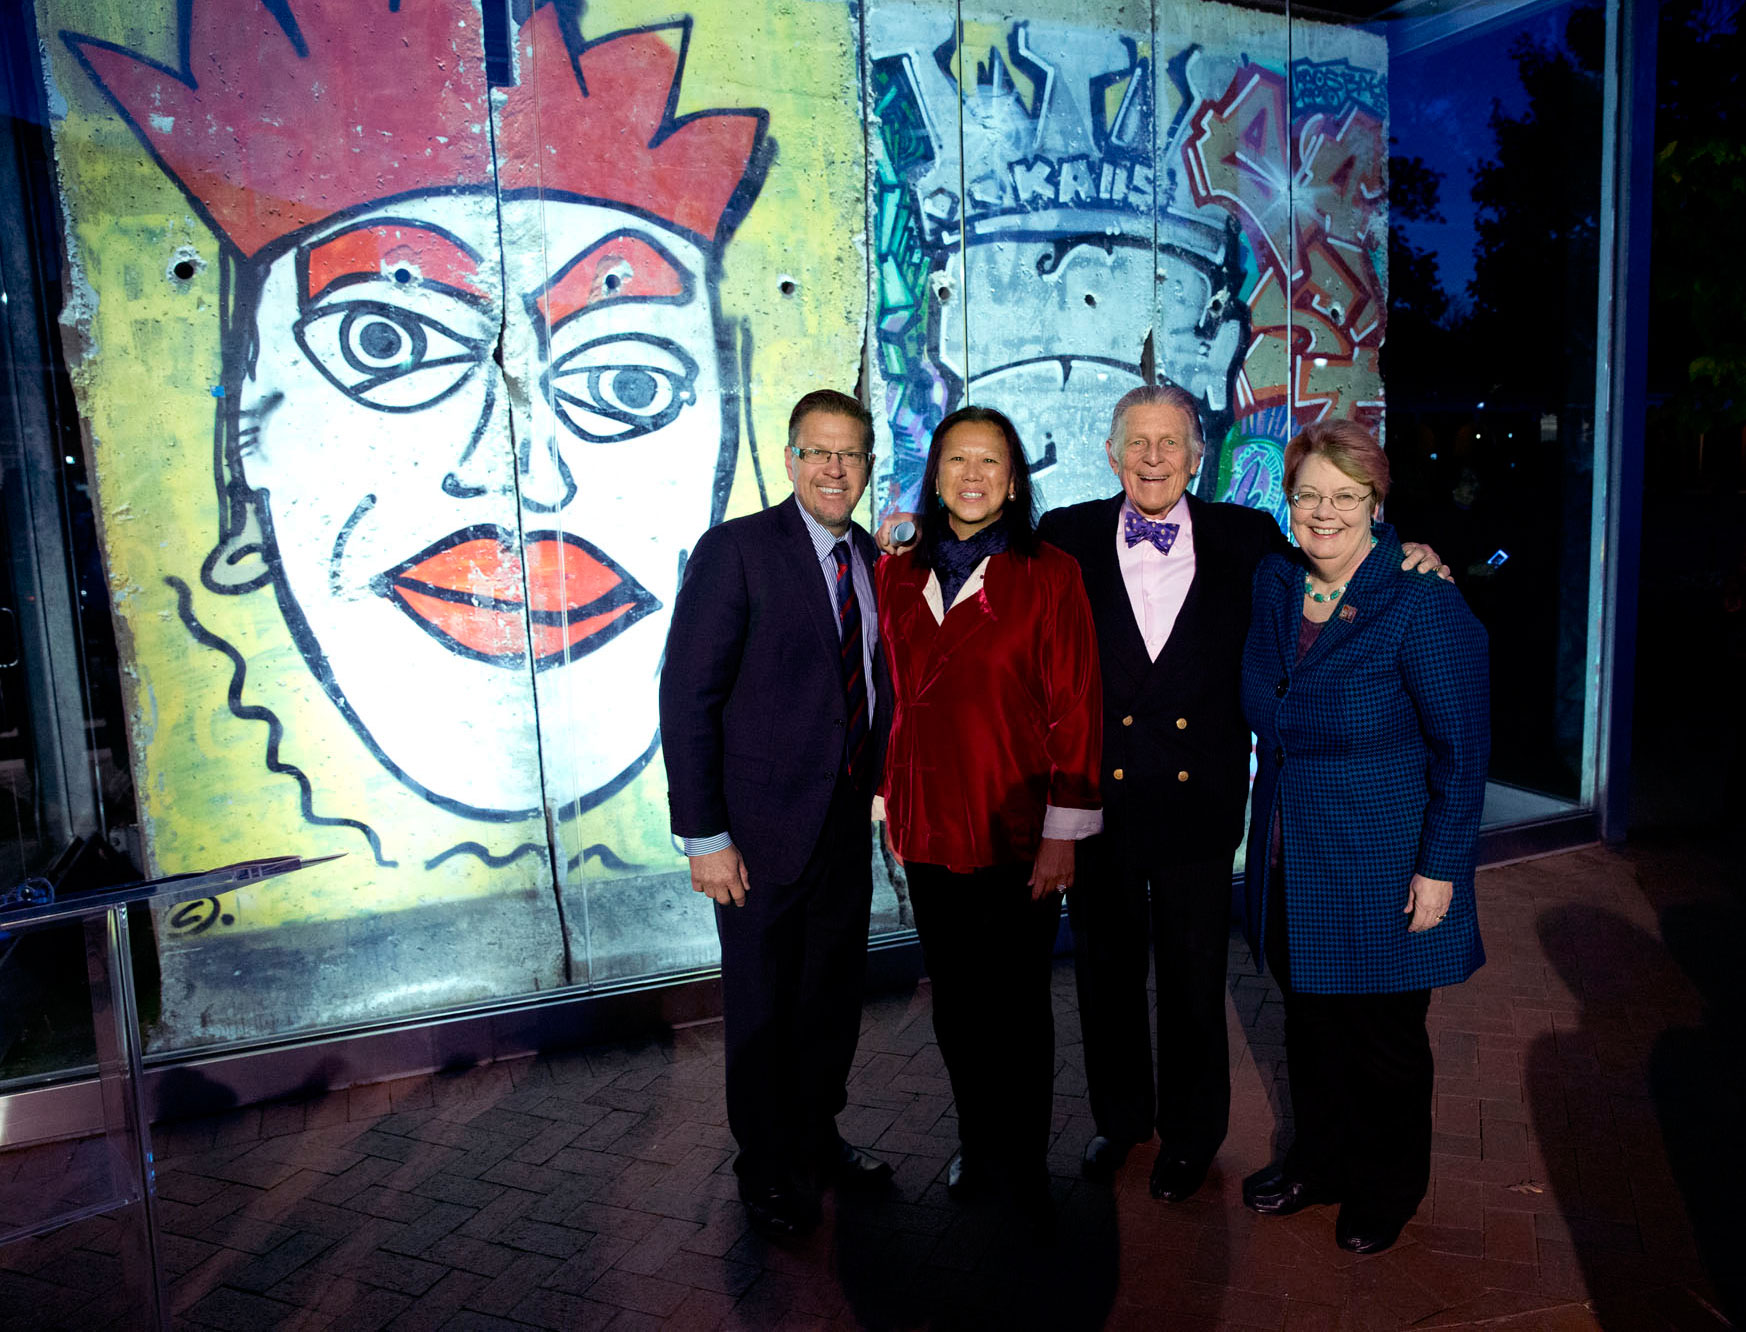 Group photo left to right: Robert Hefner, MeiLi Hefner., Jody Kielbasa, and President Teresa A. Sullivan 